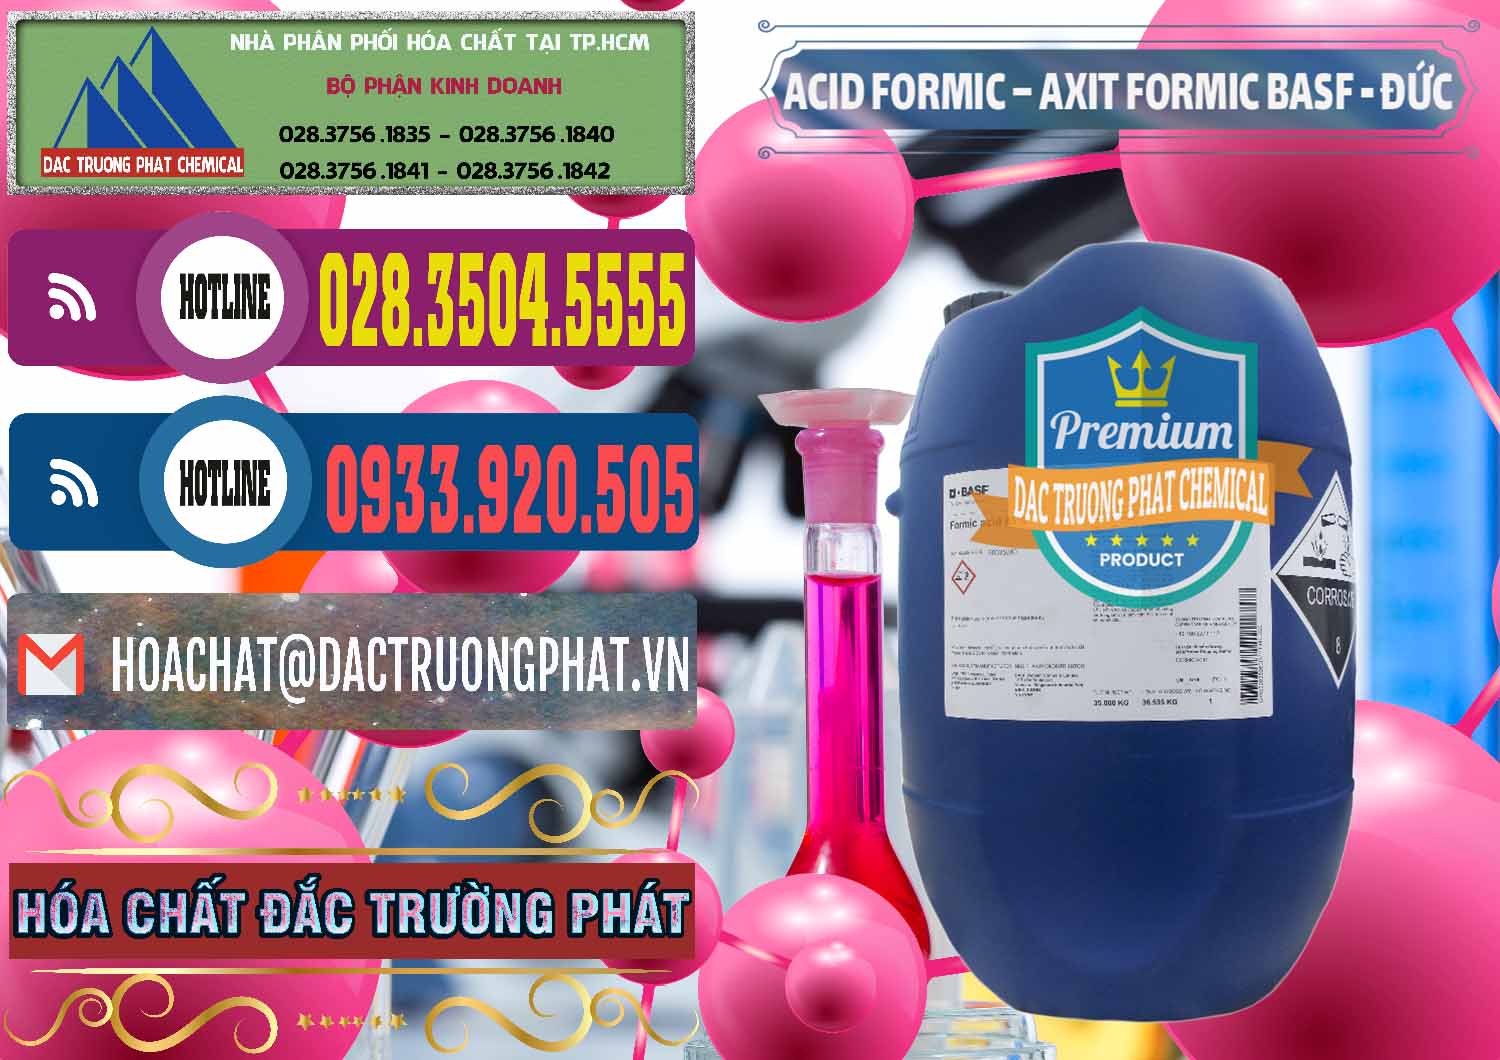 Cty kinh doanh _ bán Acid Formic - Axit Formic BASF Đức Germany - 0028 - Cty bán & phân phối hóa chất tại TP.HCM - muabanhoachat.com.vn